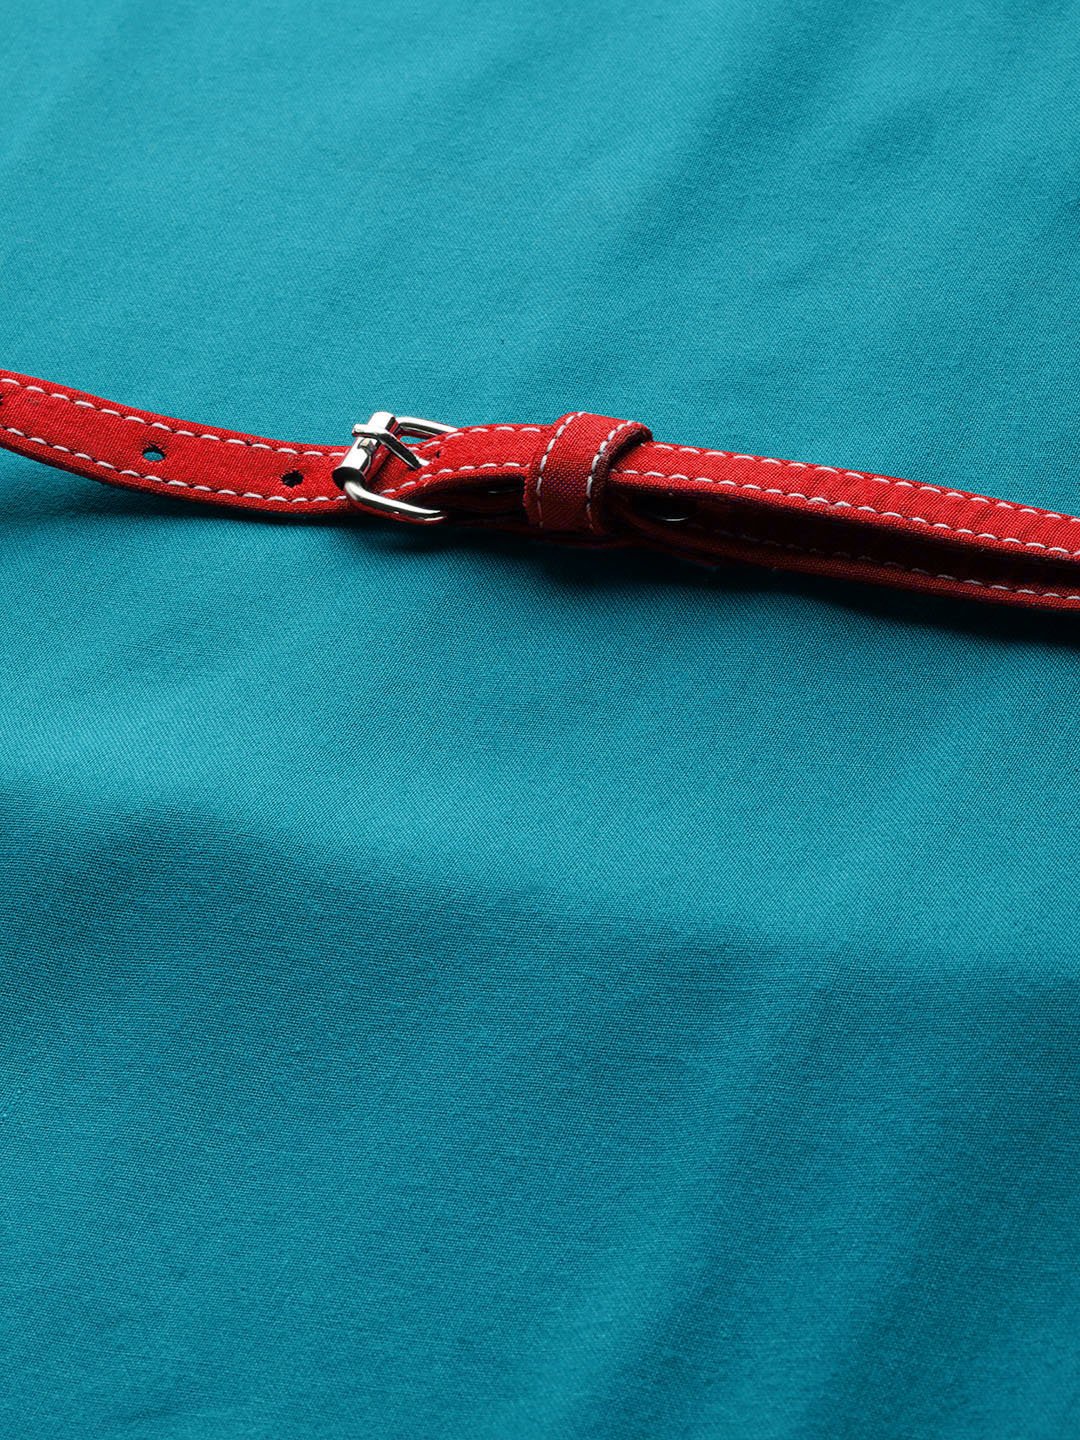 Aqua Blue Dress Red Belt